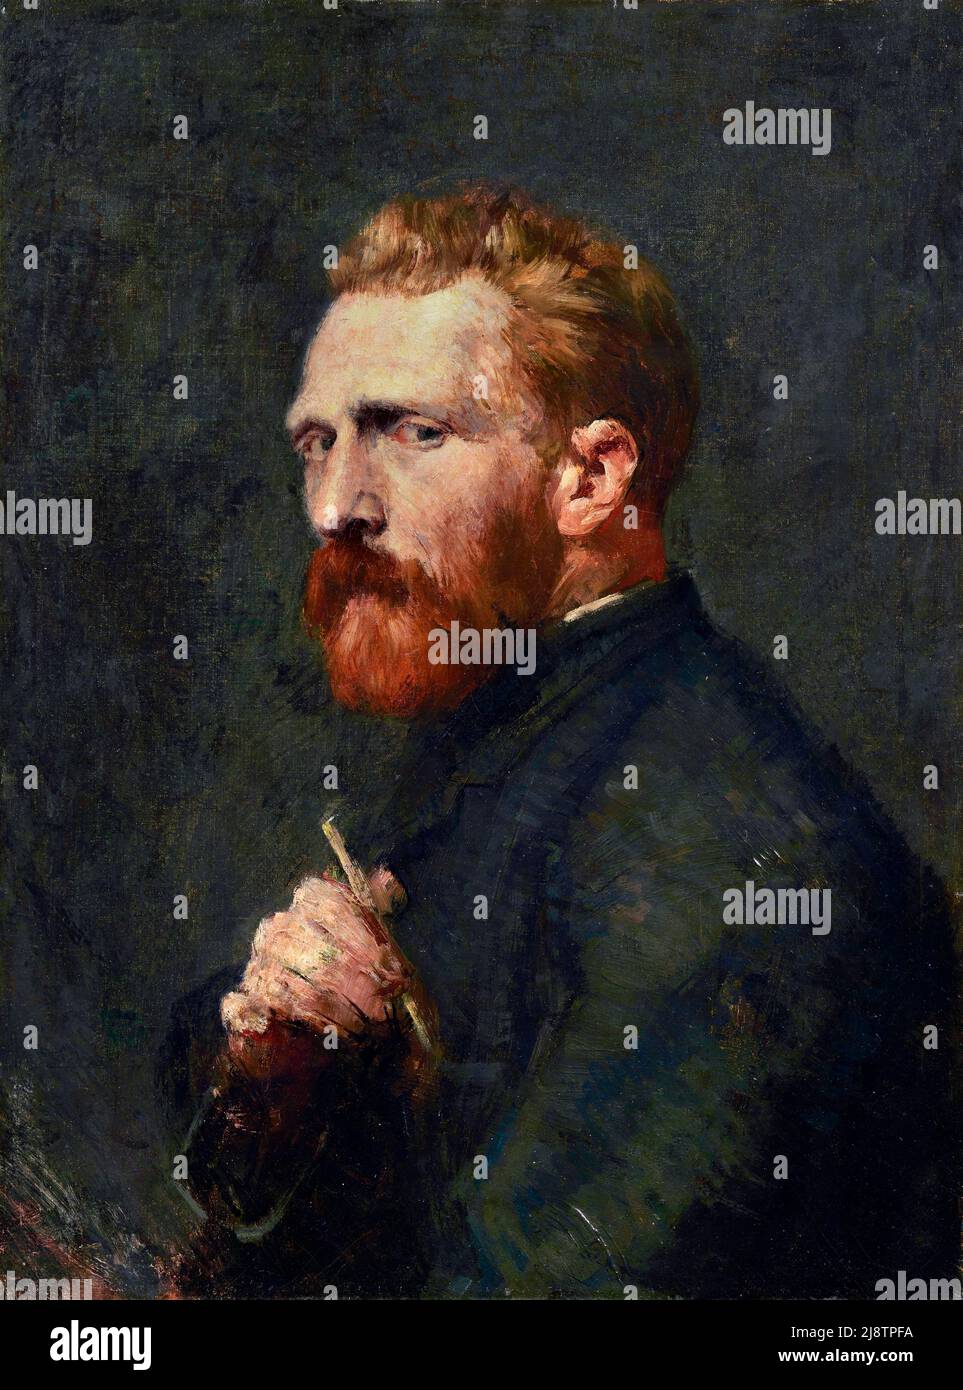 Ritratto di Vincent Van Gogh del pittore impressionista australiano John Russell (1858-1930), olio su tela, 1886 Foto Stock